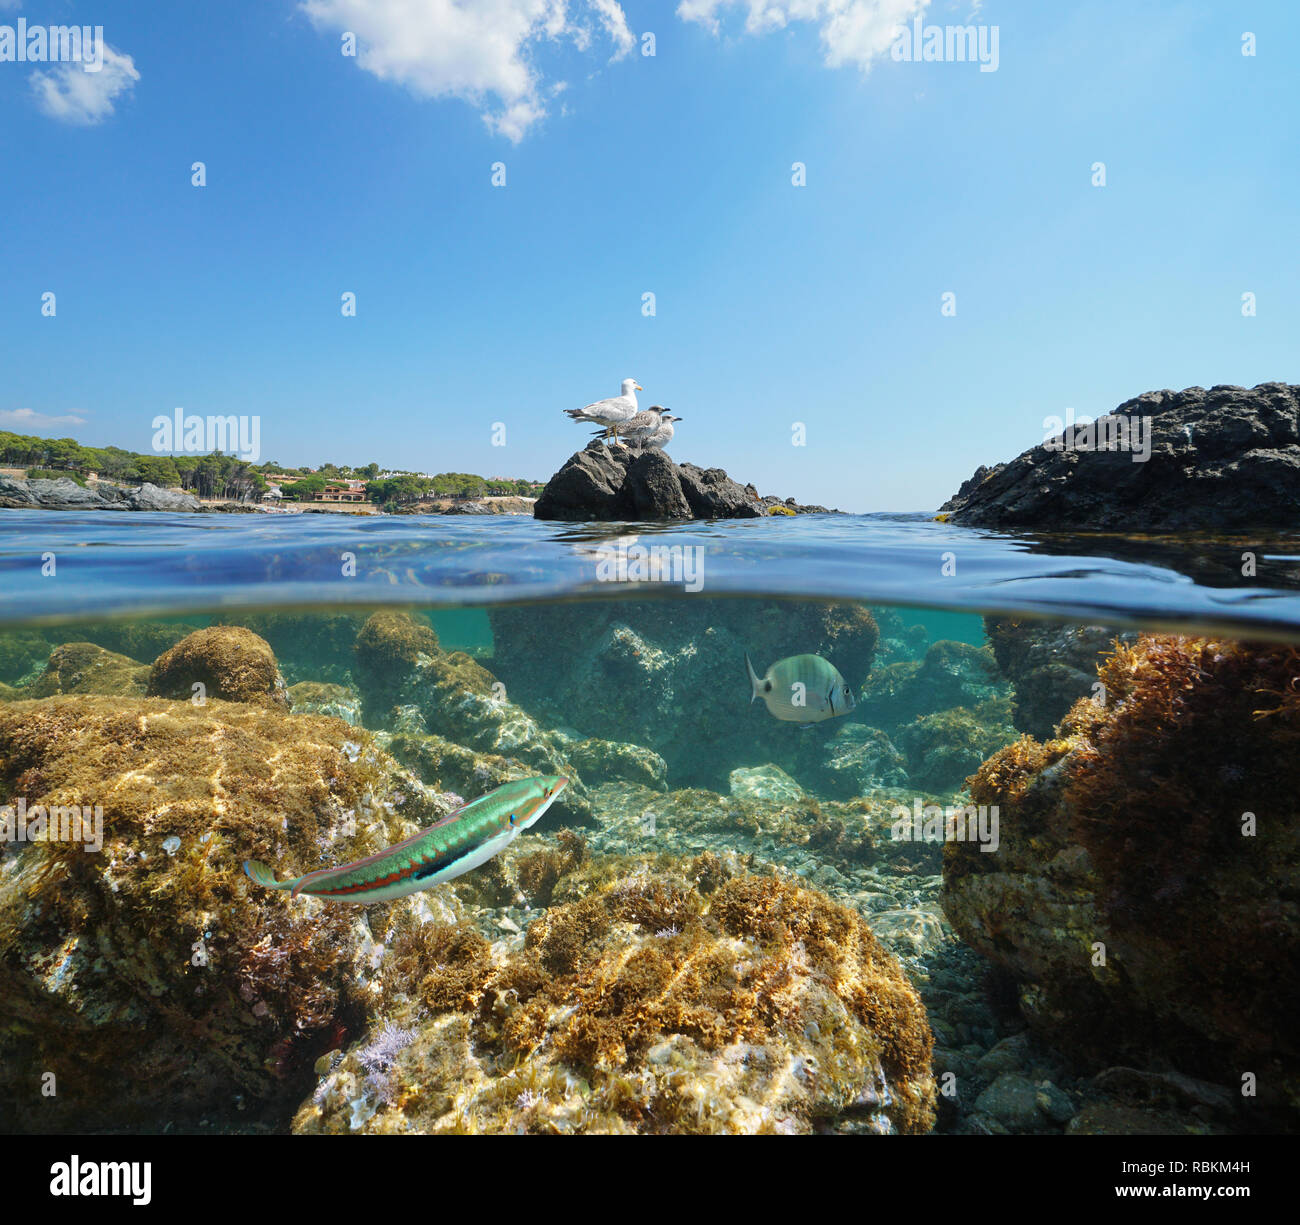 Spagna pinguini sulla roccia e pesce subacquea, mare Mediterraneo, vista suddivisa a metà al di sopra e al di sotto di acqua, Llanca in Costa Brava Catalogna Foto Stock